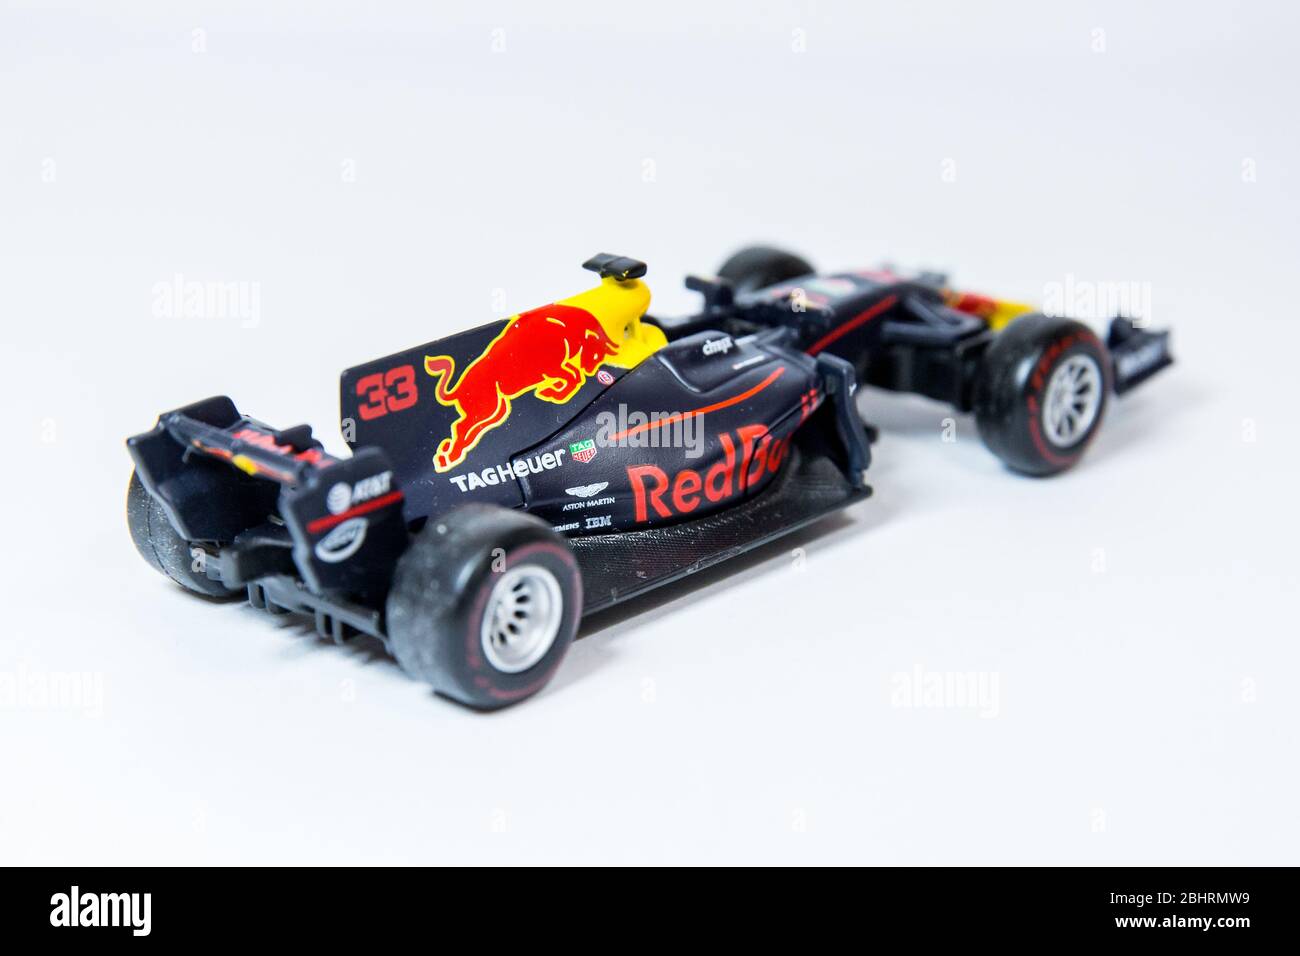 Bburago Red Bull Racing RB13 1:43 model Formula One car. Max